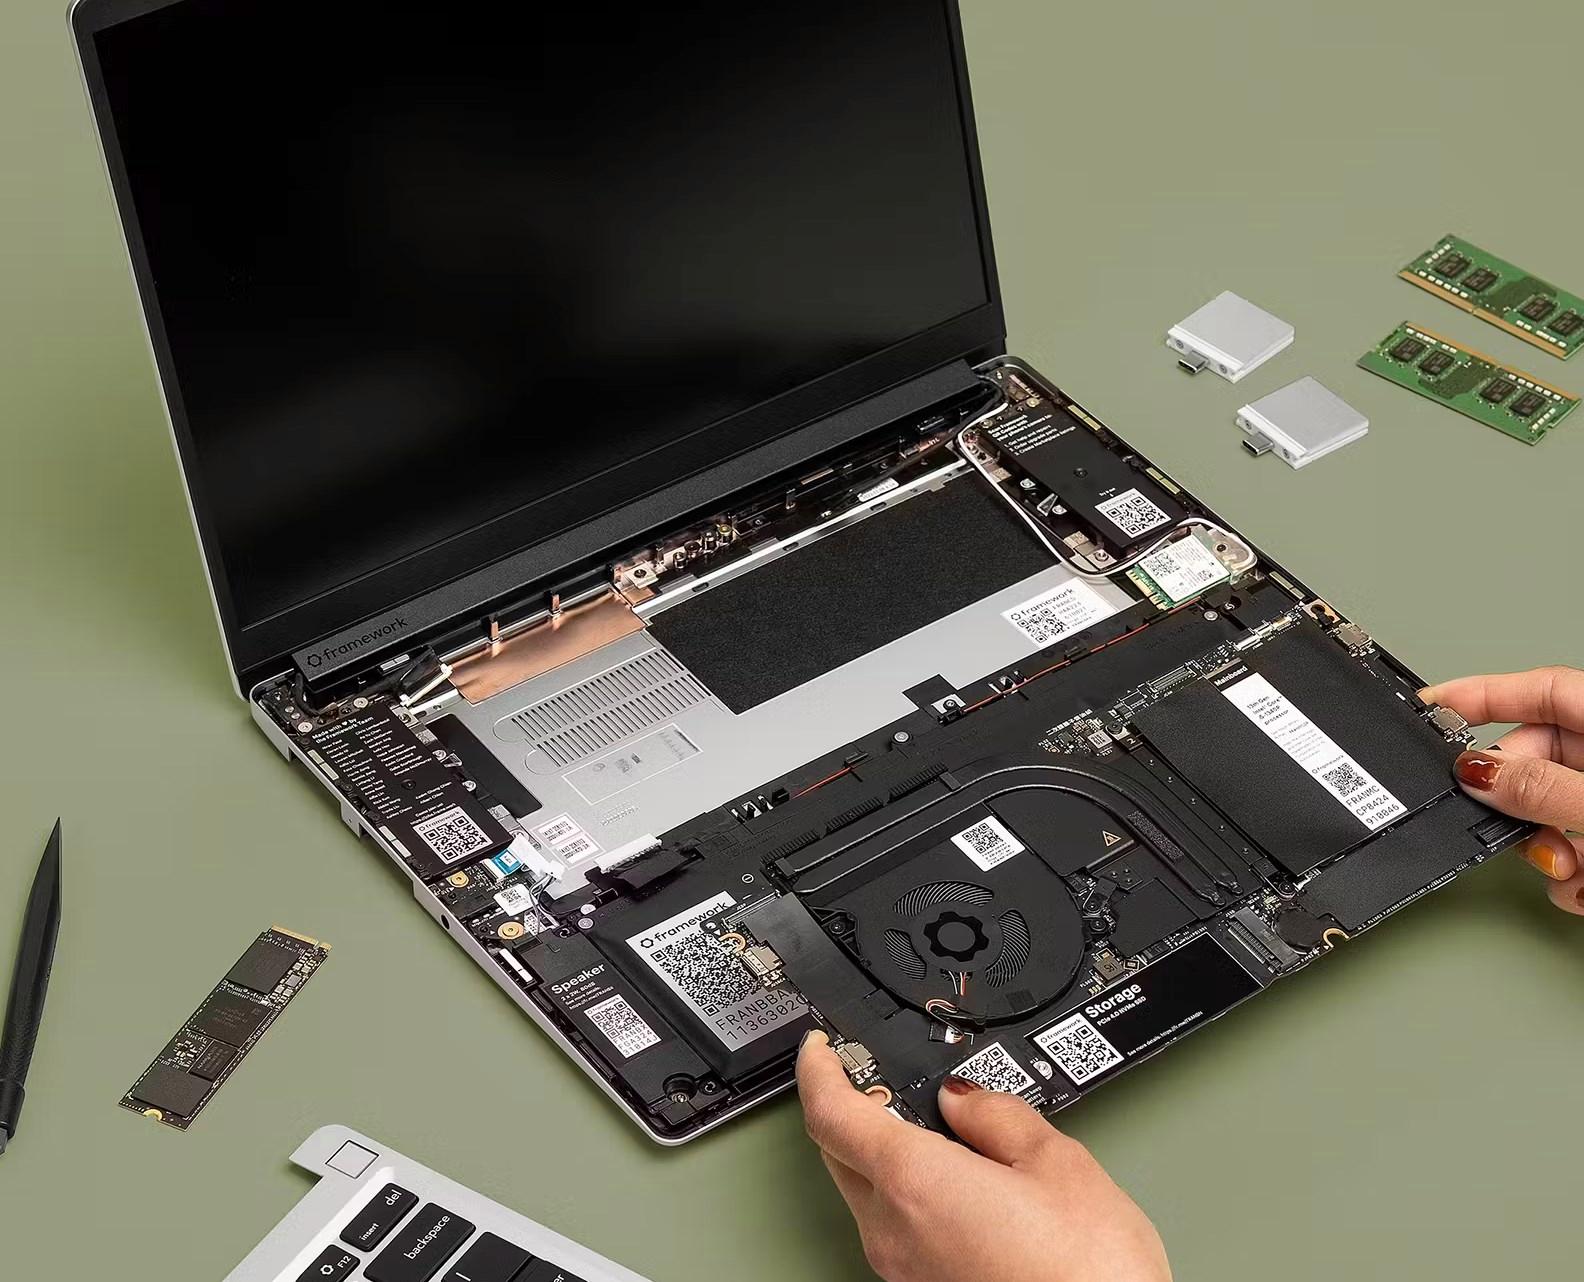 Bu dizüstünde RAM, SSD hatta güç adaptörü bile yok: Peki neden?